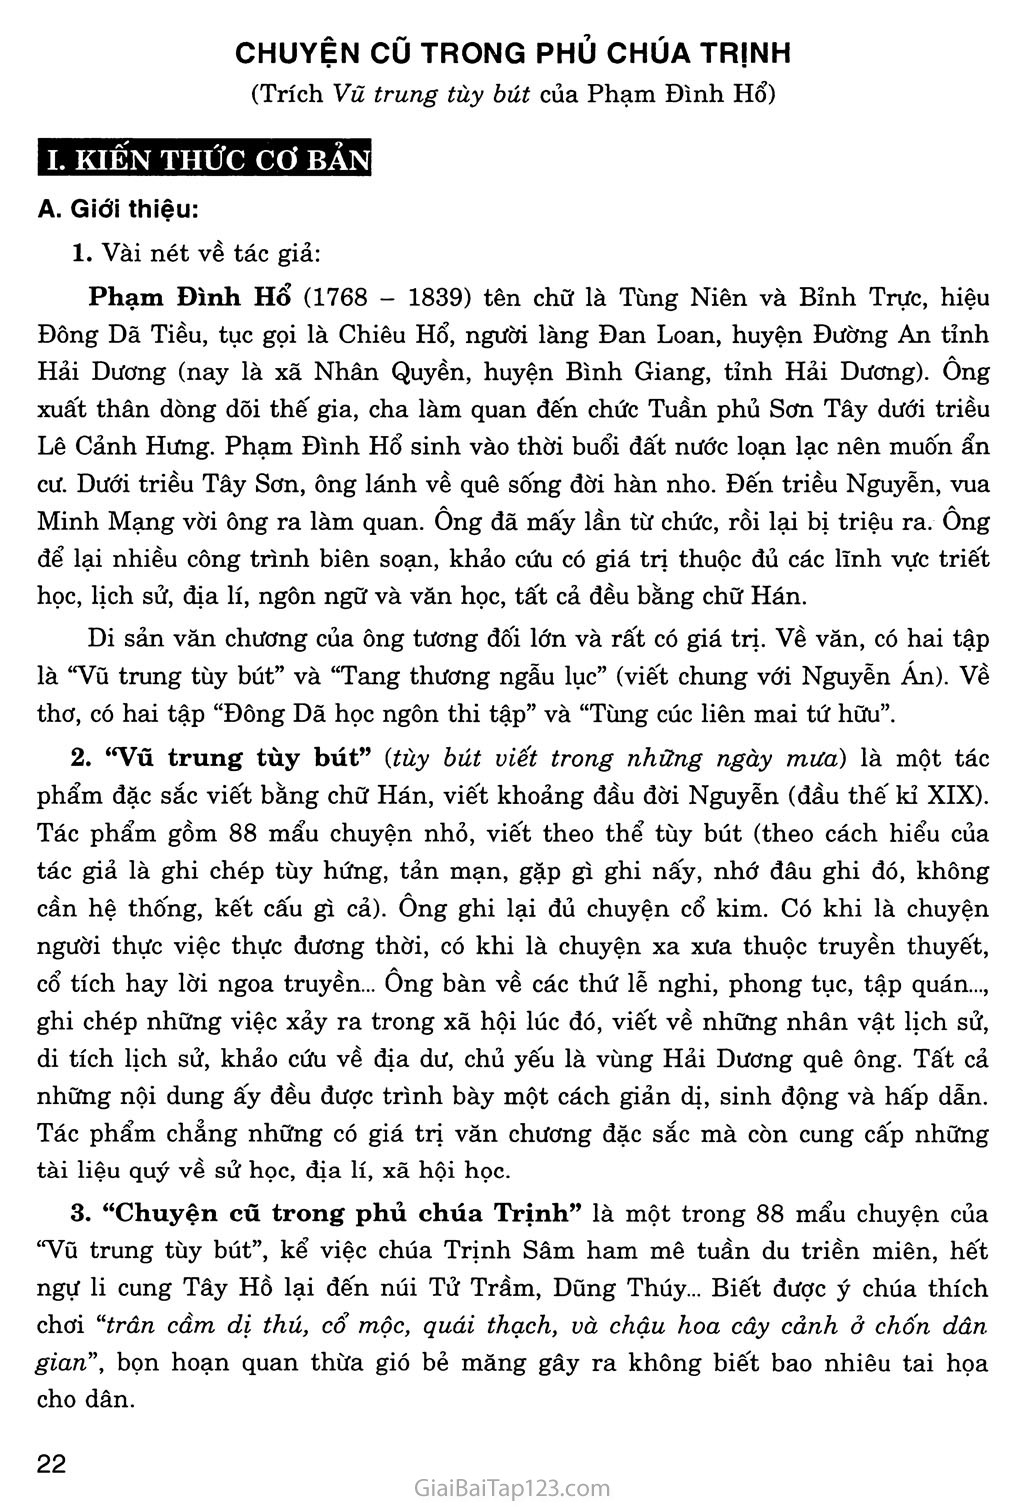 Chuyện cũ trong phủ chúa Trịnh (trích Vũ trung tùy bút) trang 1